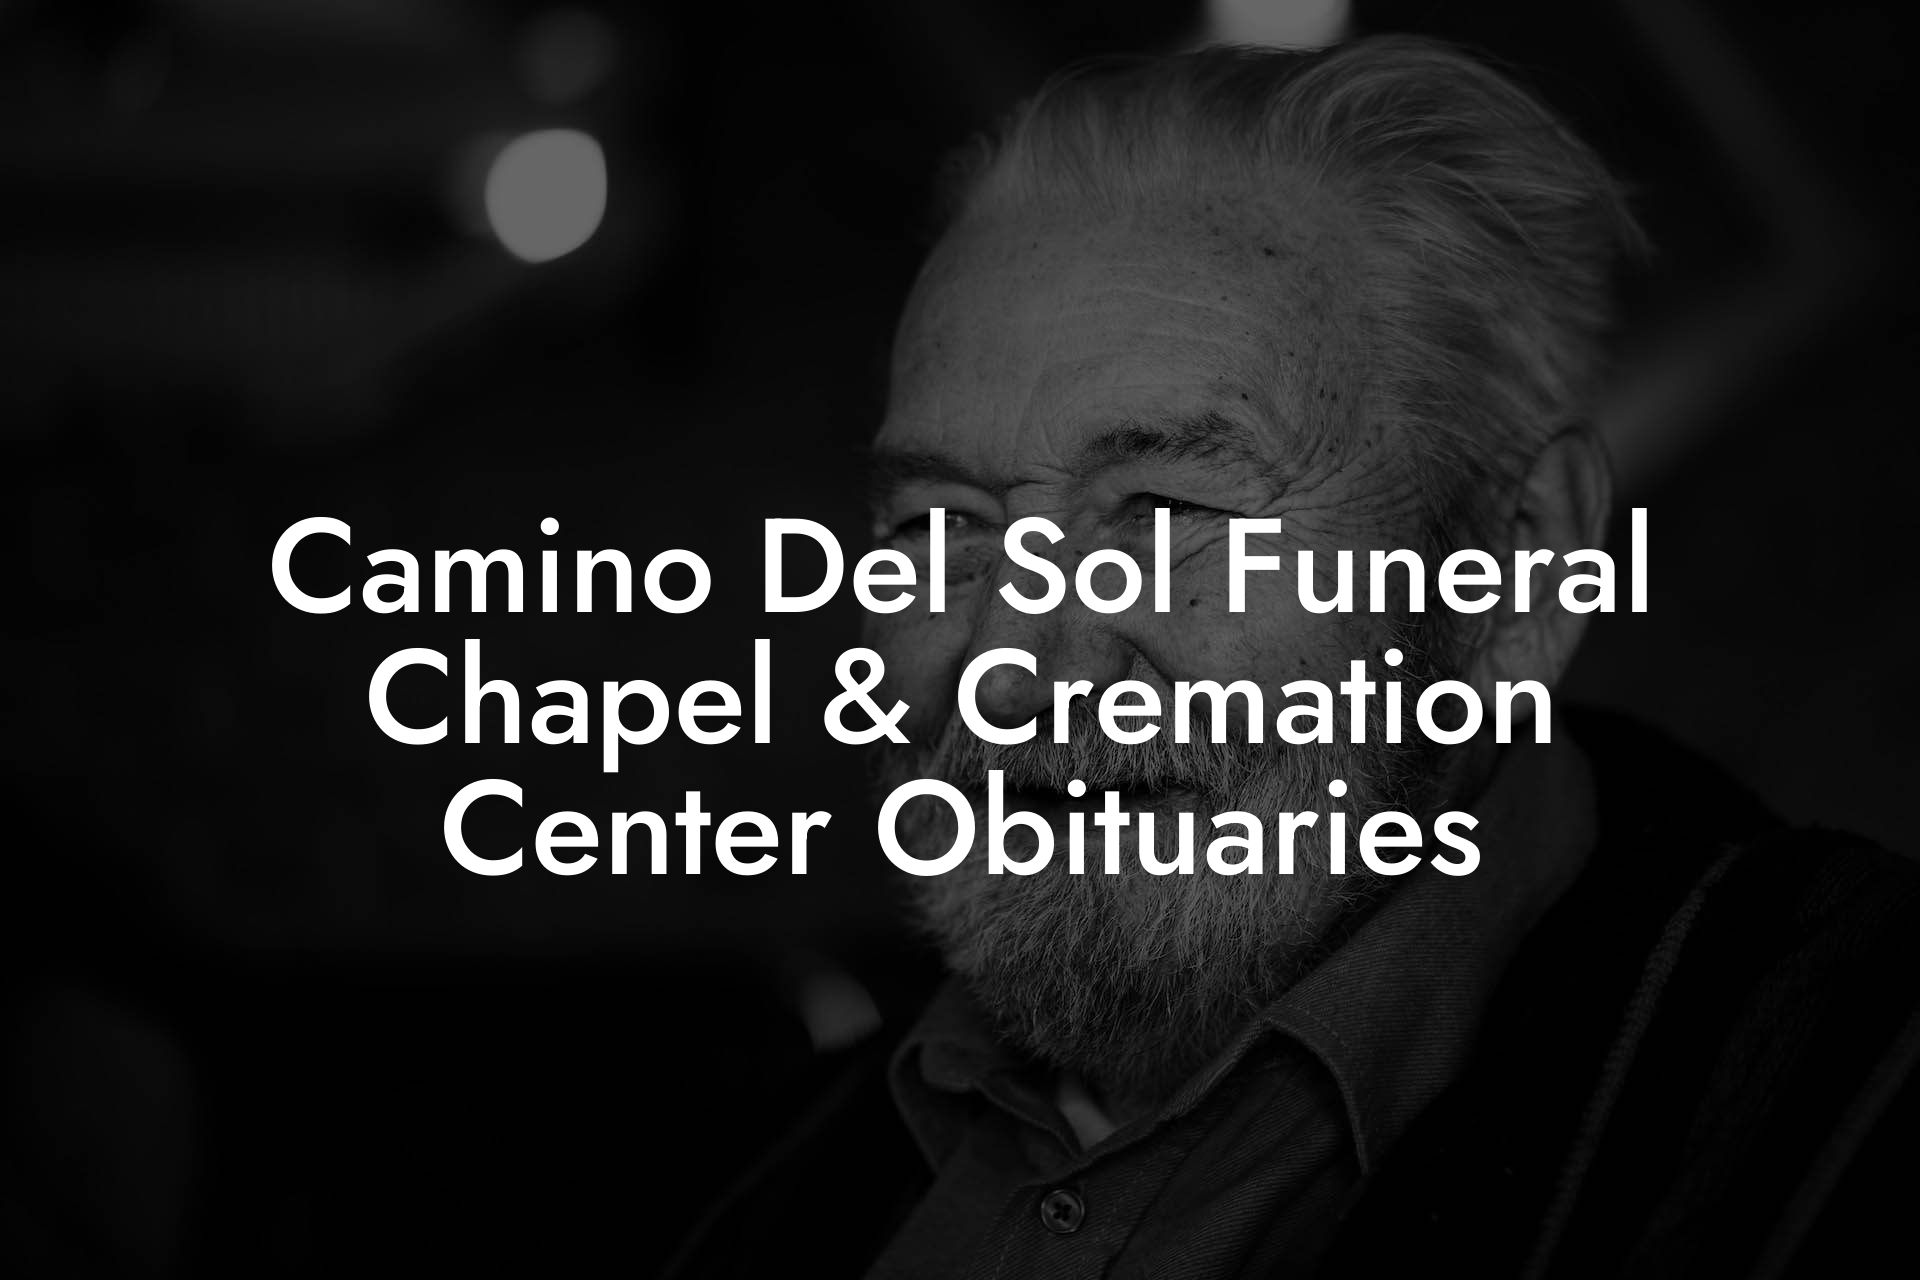 Camino Del Sol Funeral Chapel & Cremation Center Obituaries